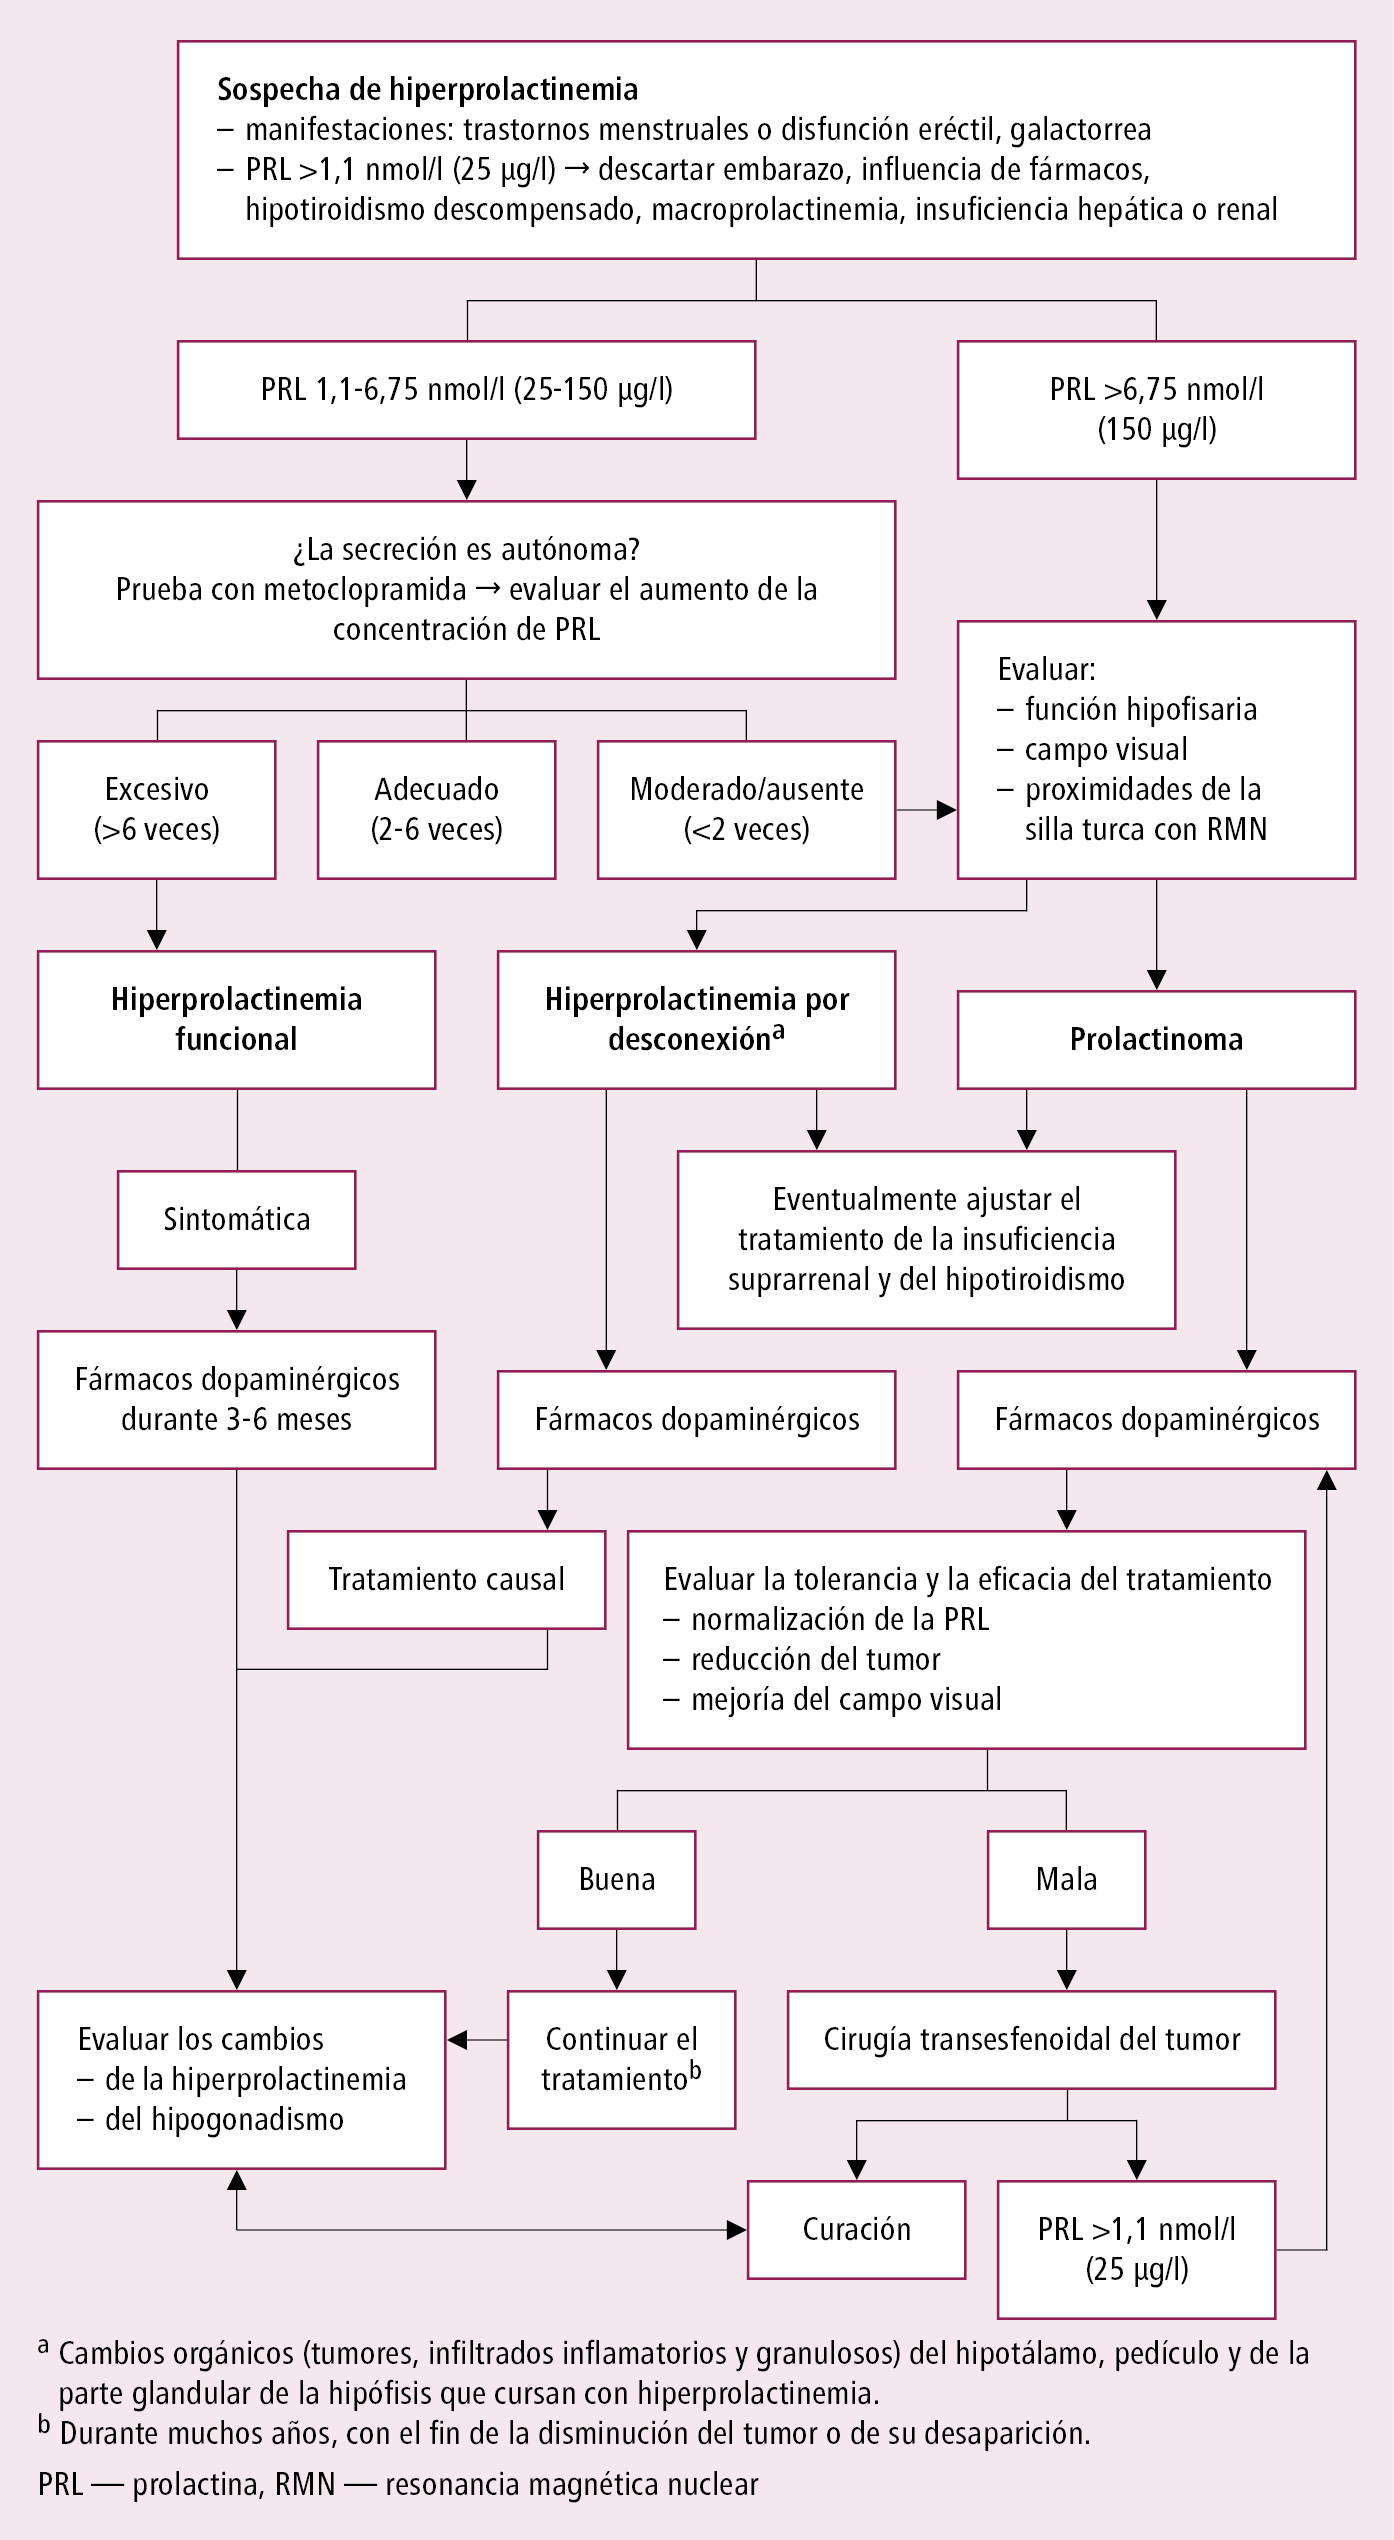    Fig. 8.4-1.  Algoritmo de actuación en hiperprolactinemia 